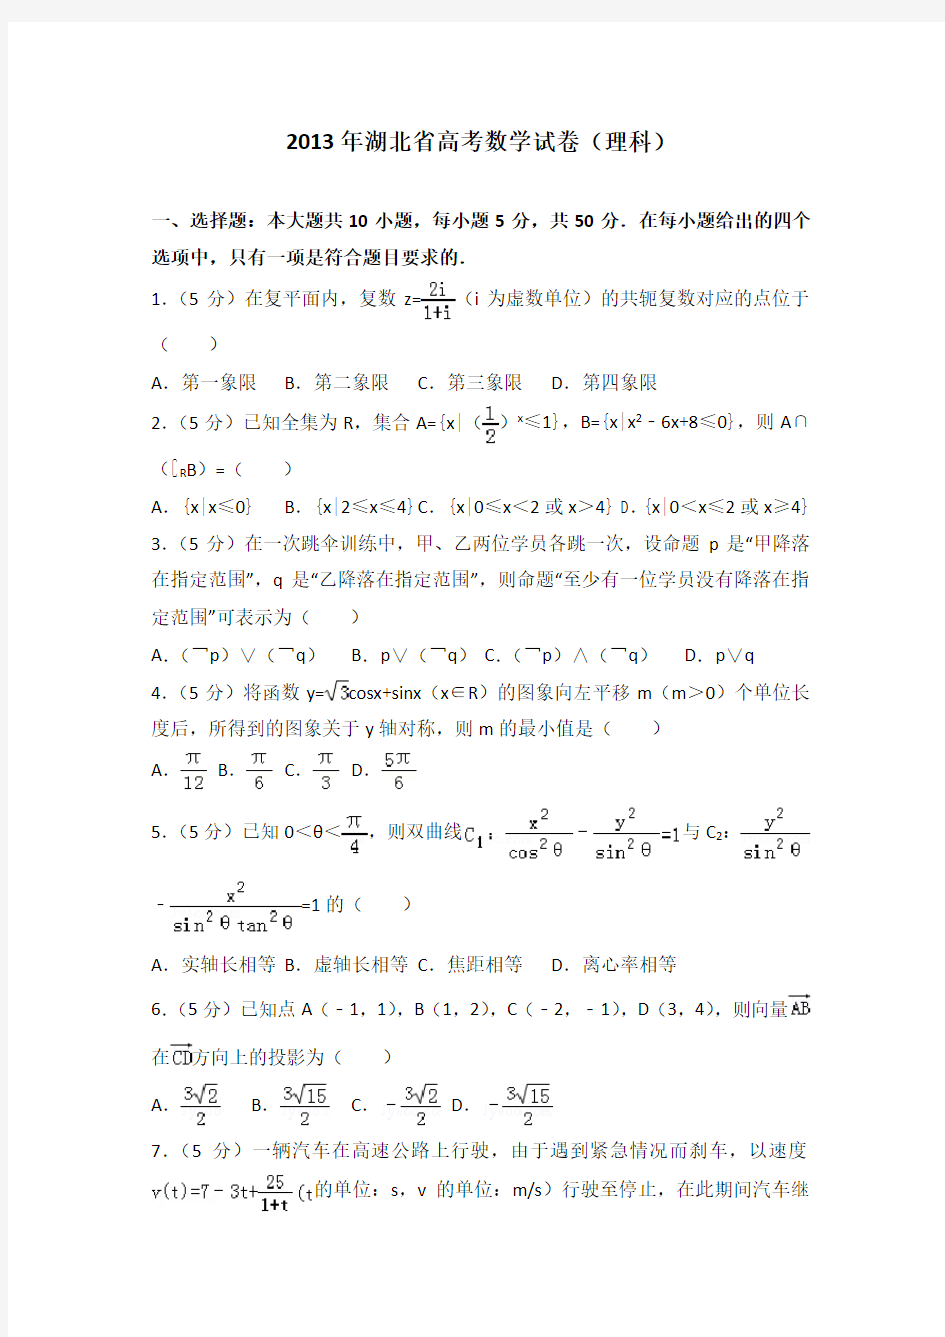 2013年湖北省高考数学试卷(理科)附送答案